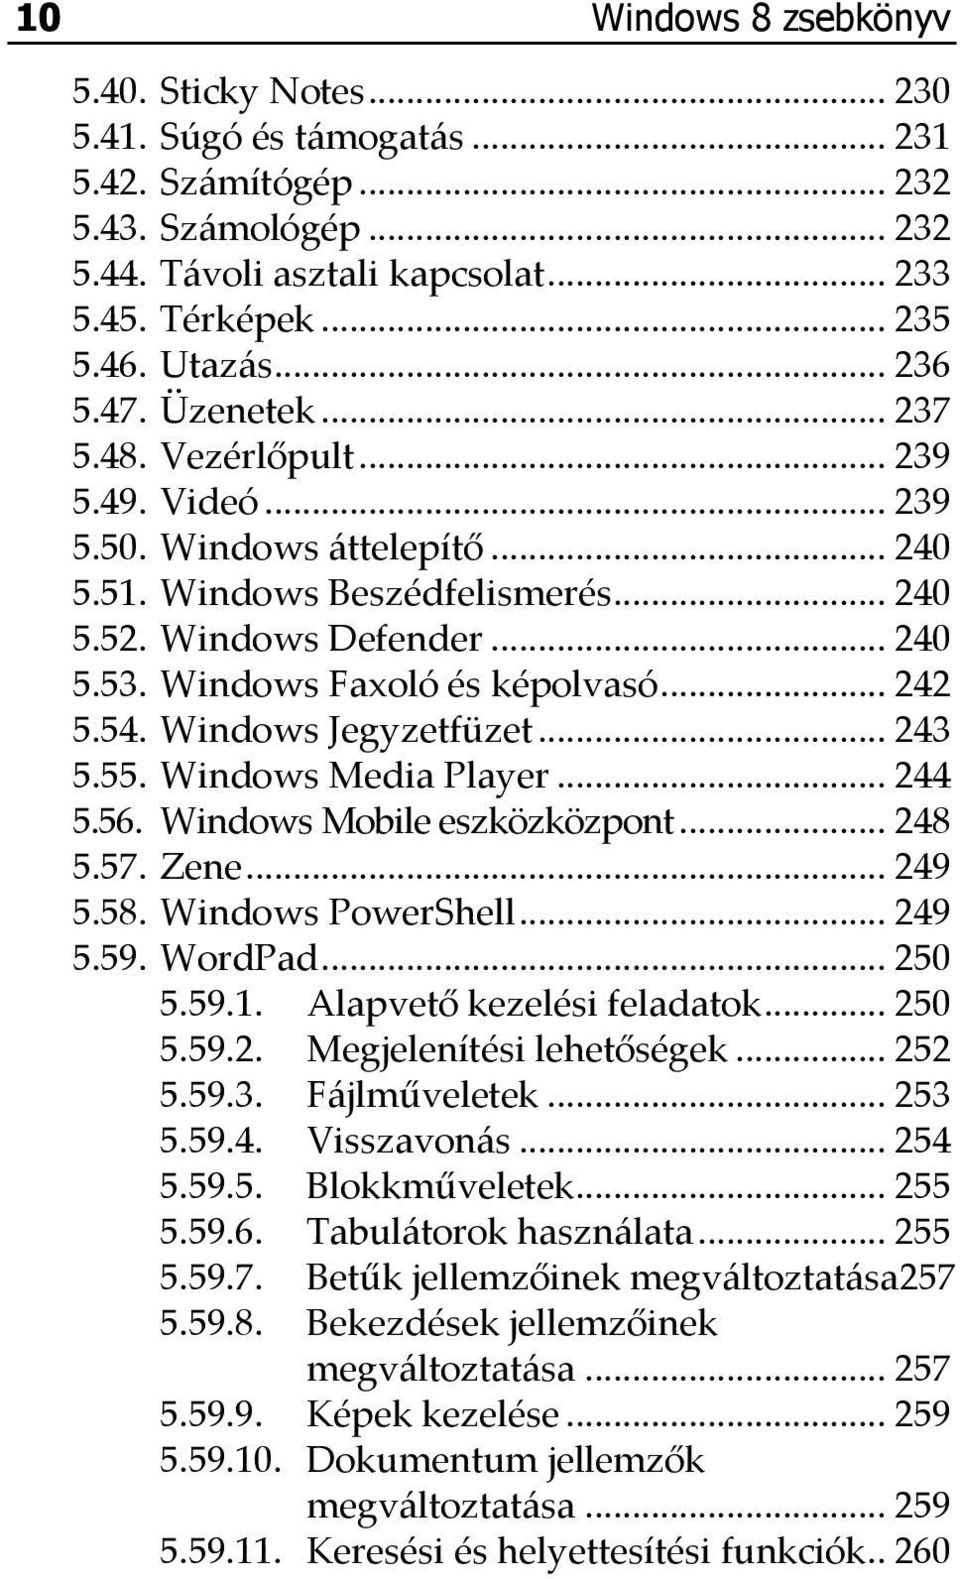 Windows Faxoló és képolvasó... 242 5.54. Windows Jegyzetfüzet... 243 5.55. Windows Media Player... 244 5.56. Windows Mobile eszközközpont... 248 5.57. Zene... 249 5.58. Windows PowerShell... 249 5.59.